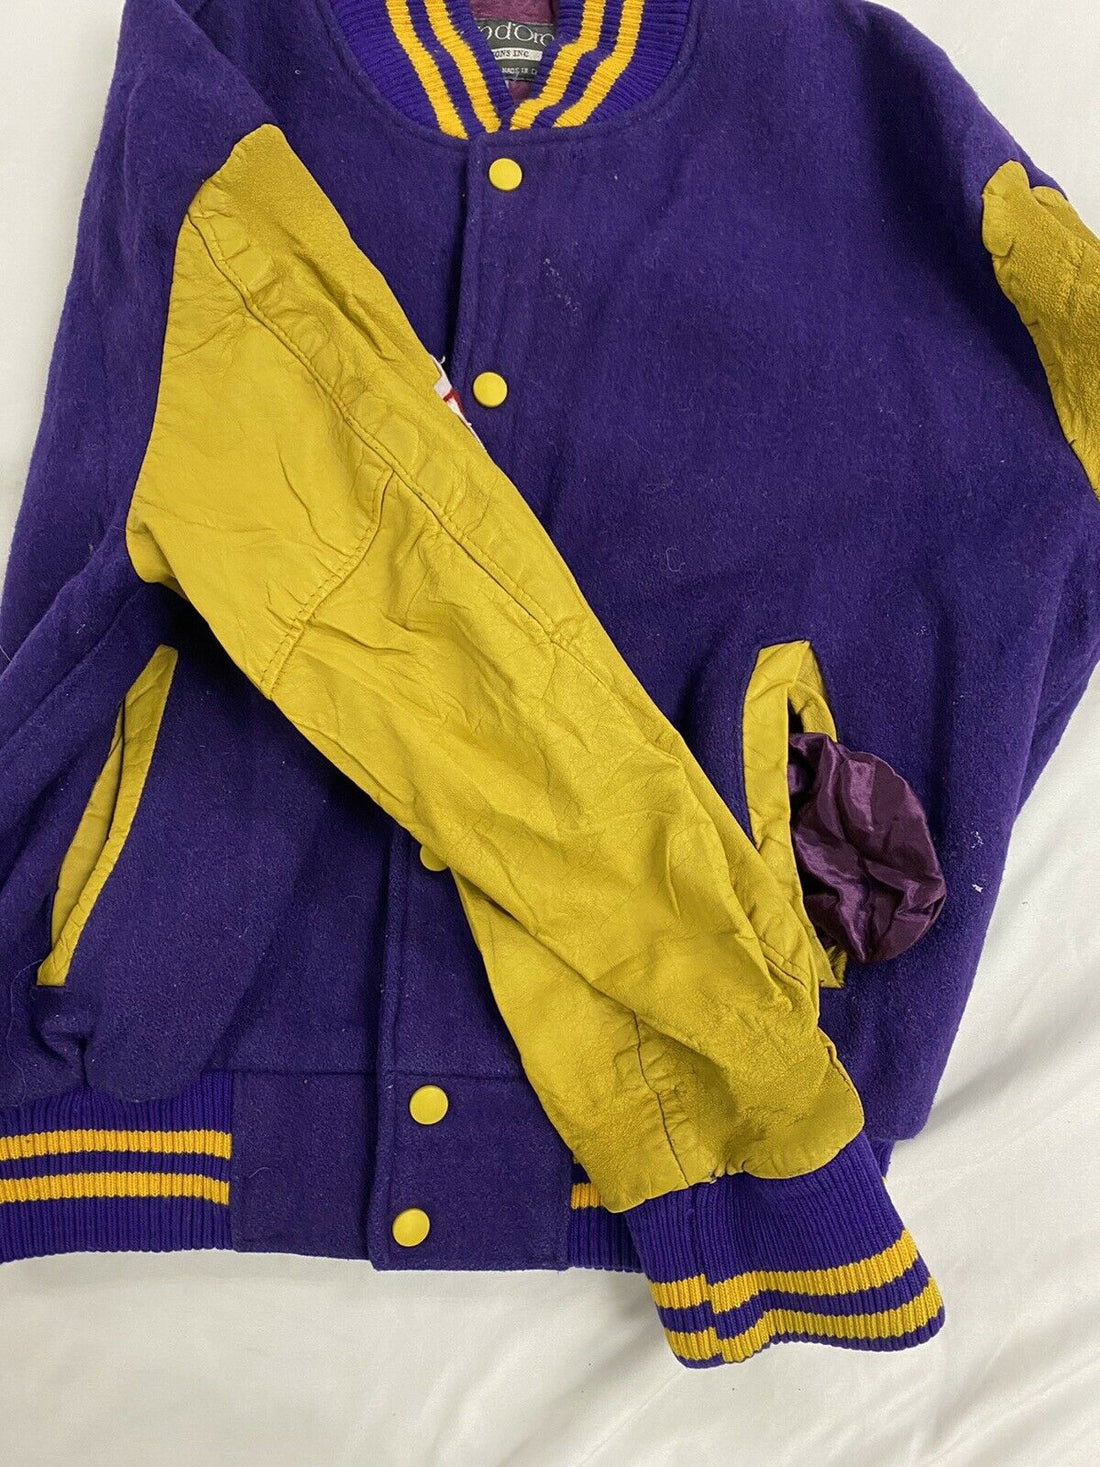 Varsity Jacket Purple&Cream